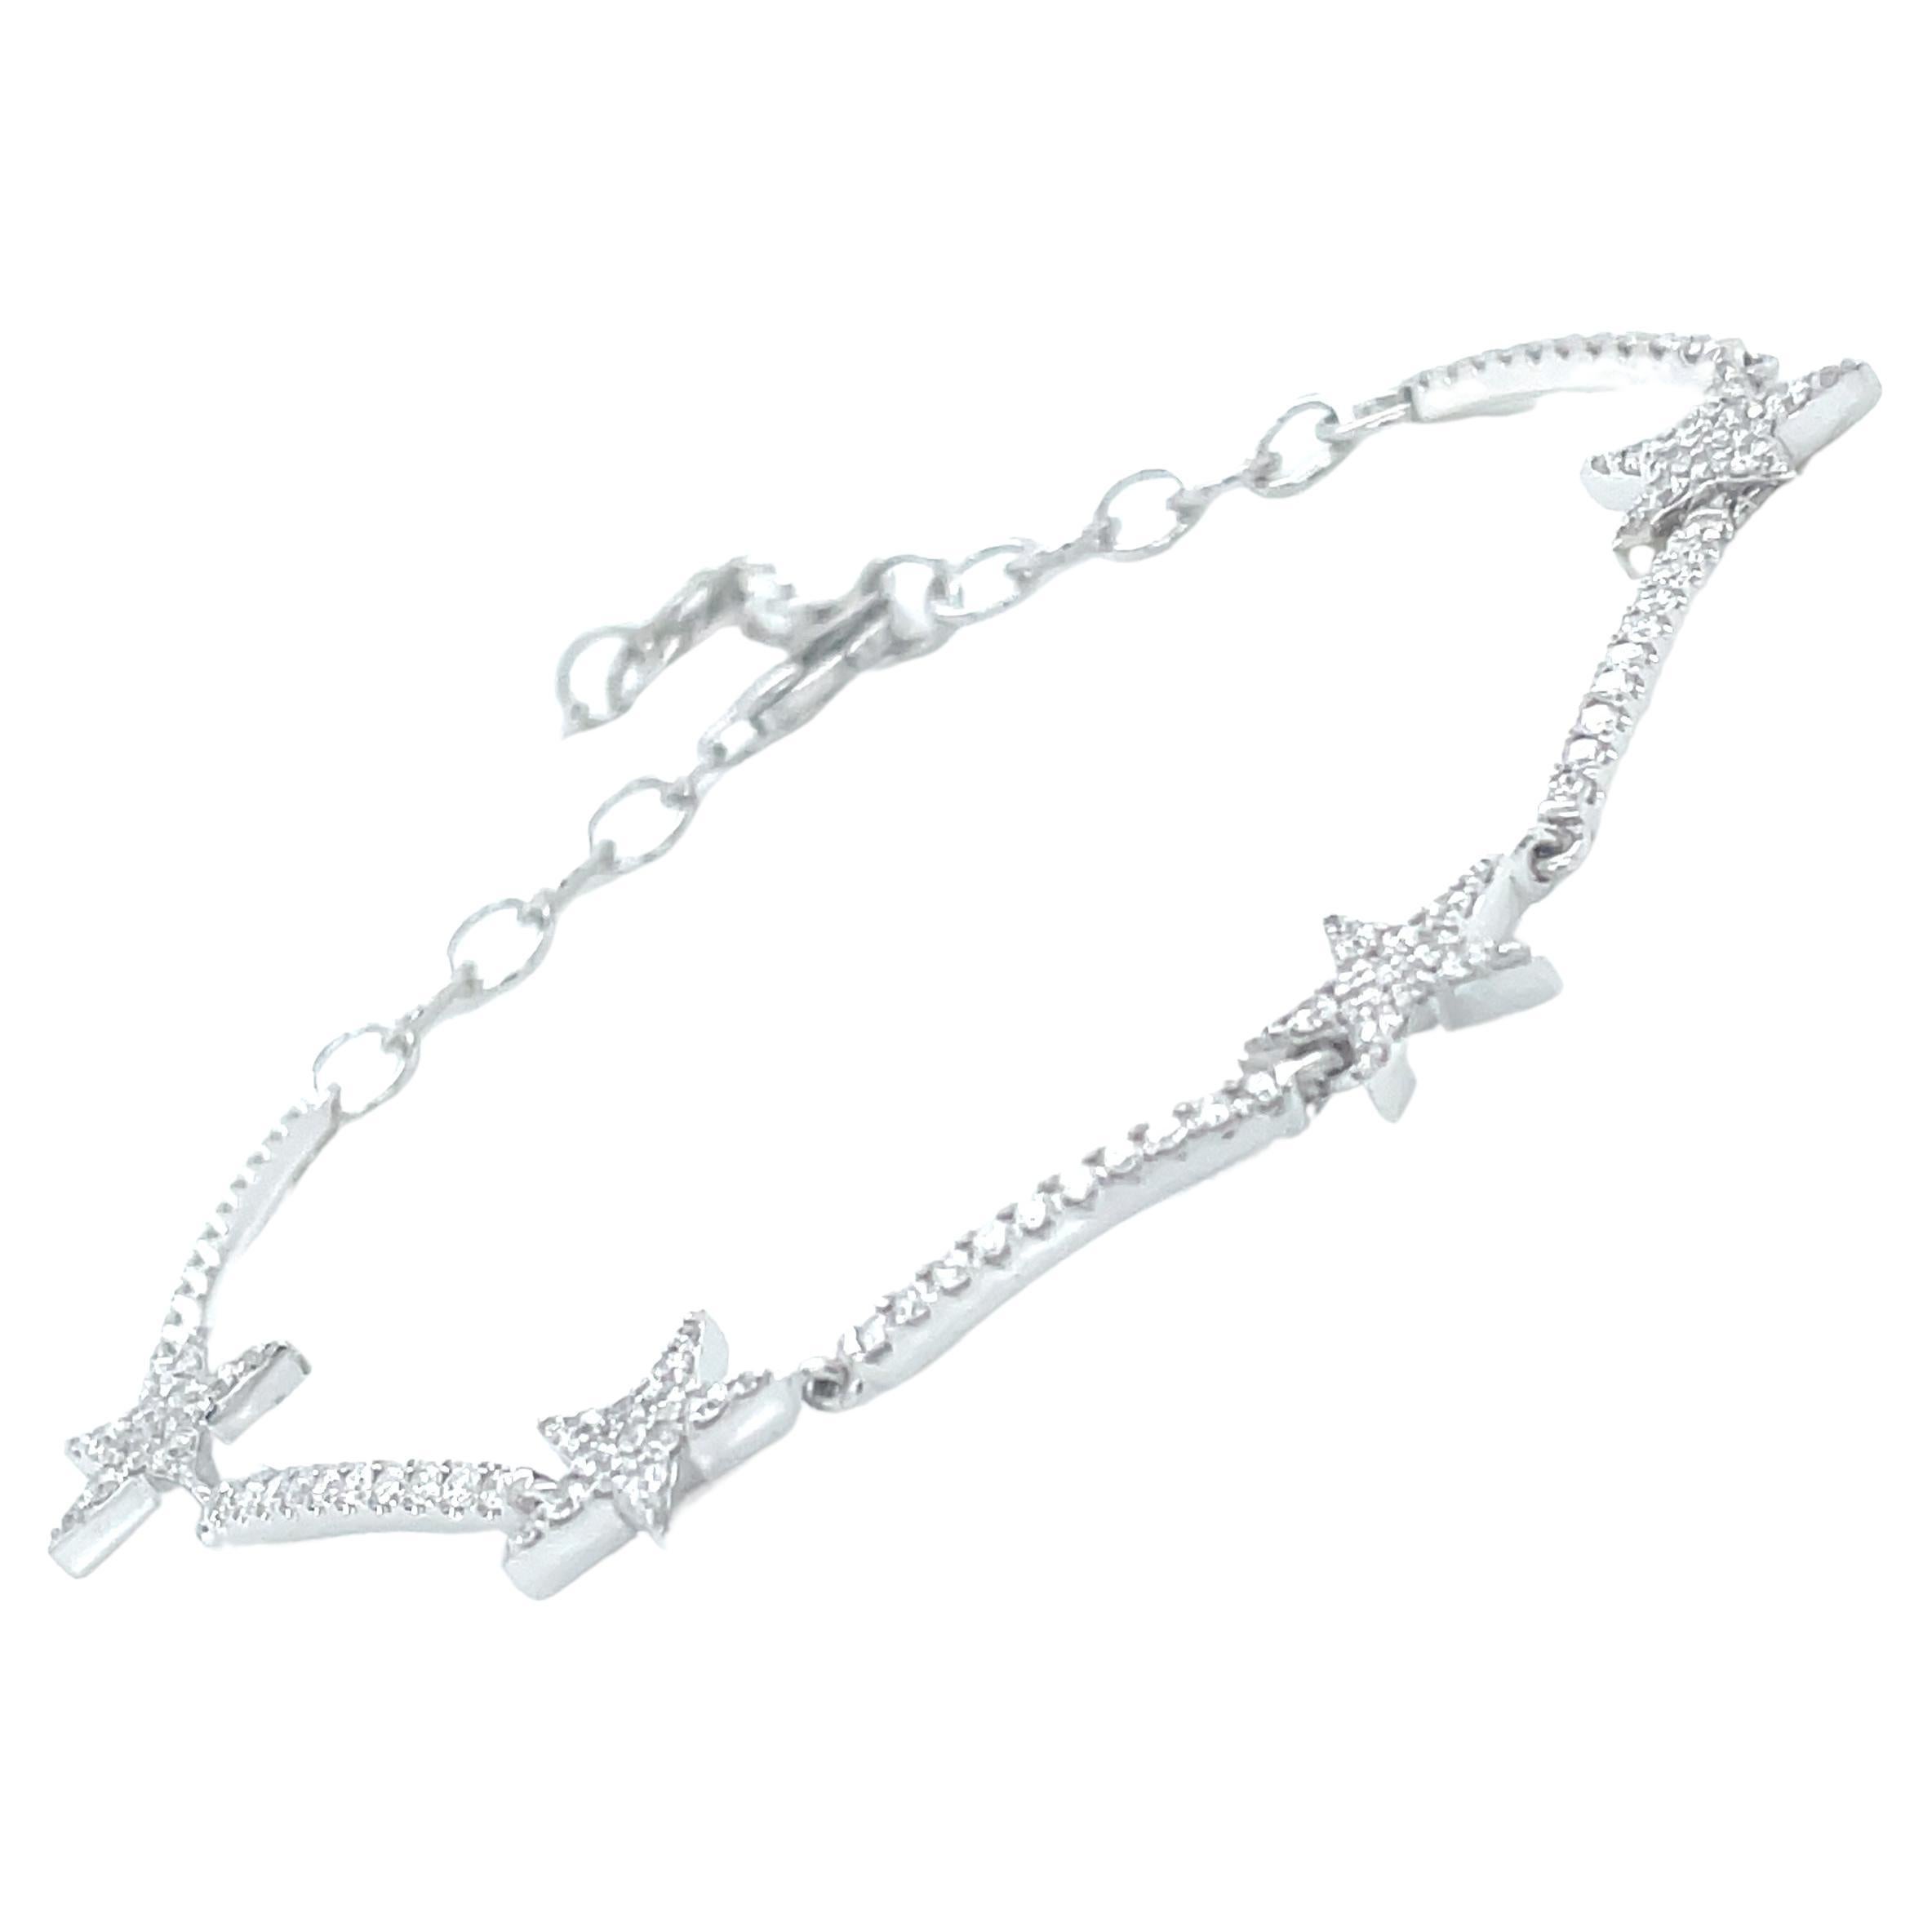 1.01 Carat Star Diamond Bracelet in 14K White Gold For Sale